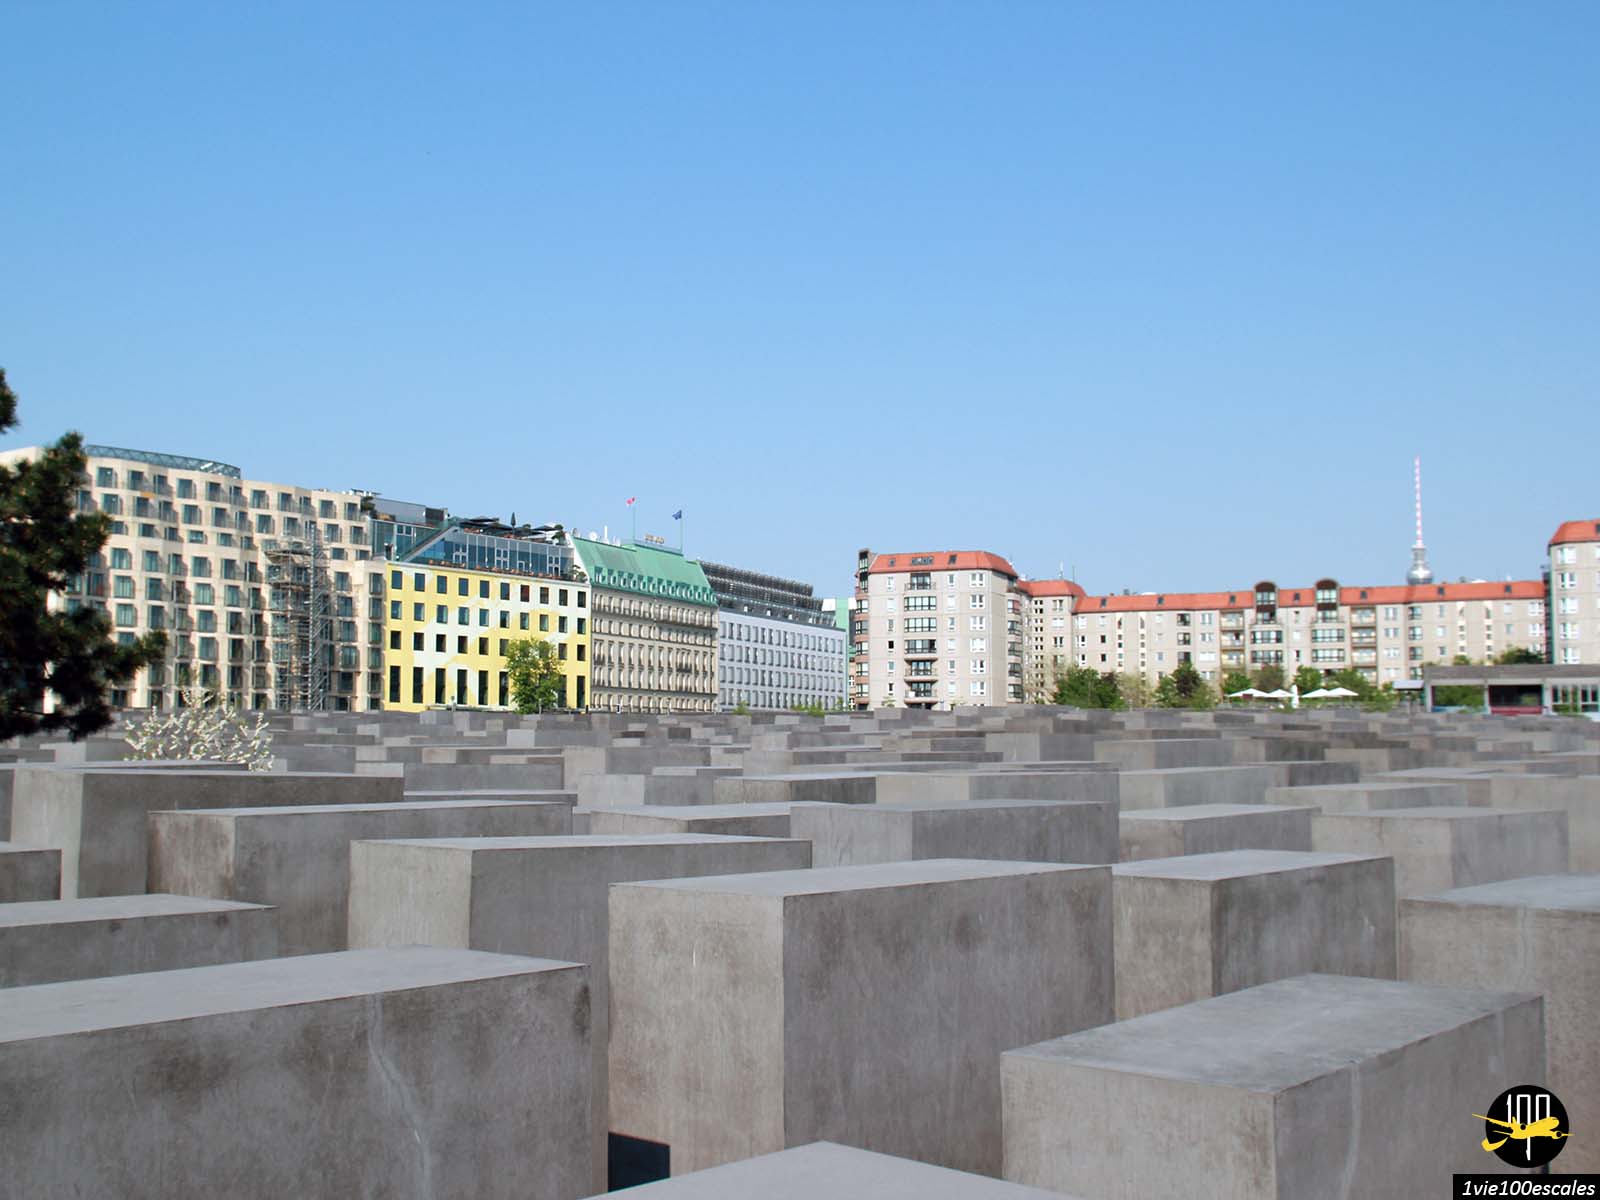 Cet ensemble monumental est dédié aux victimes juives du génocide perpétré par les Nazis durant la Seconde Guerre mondiale